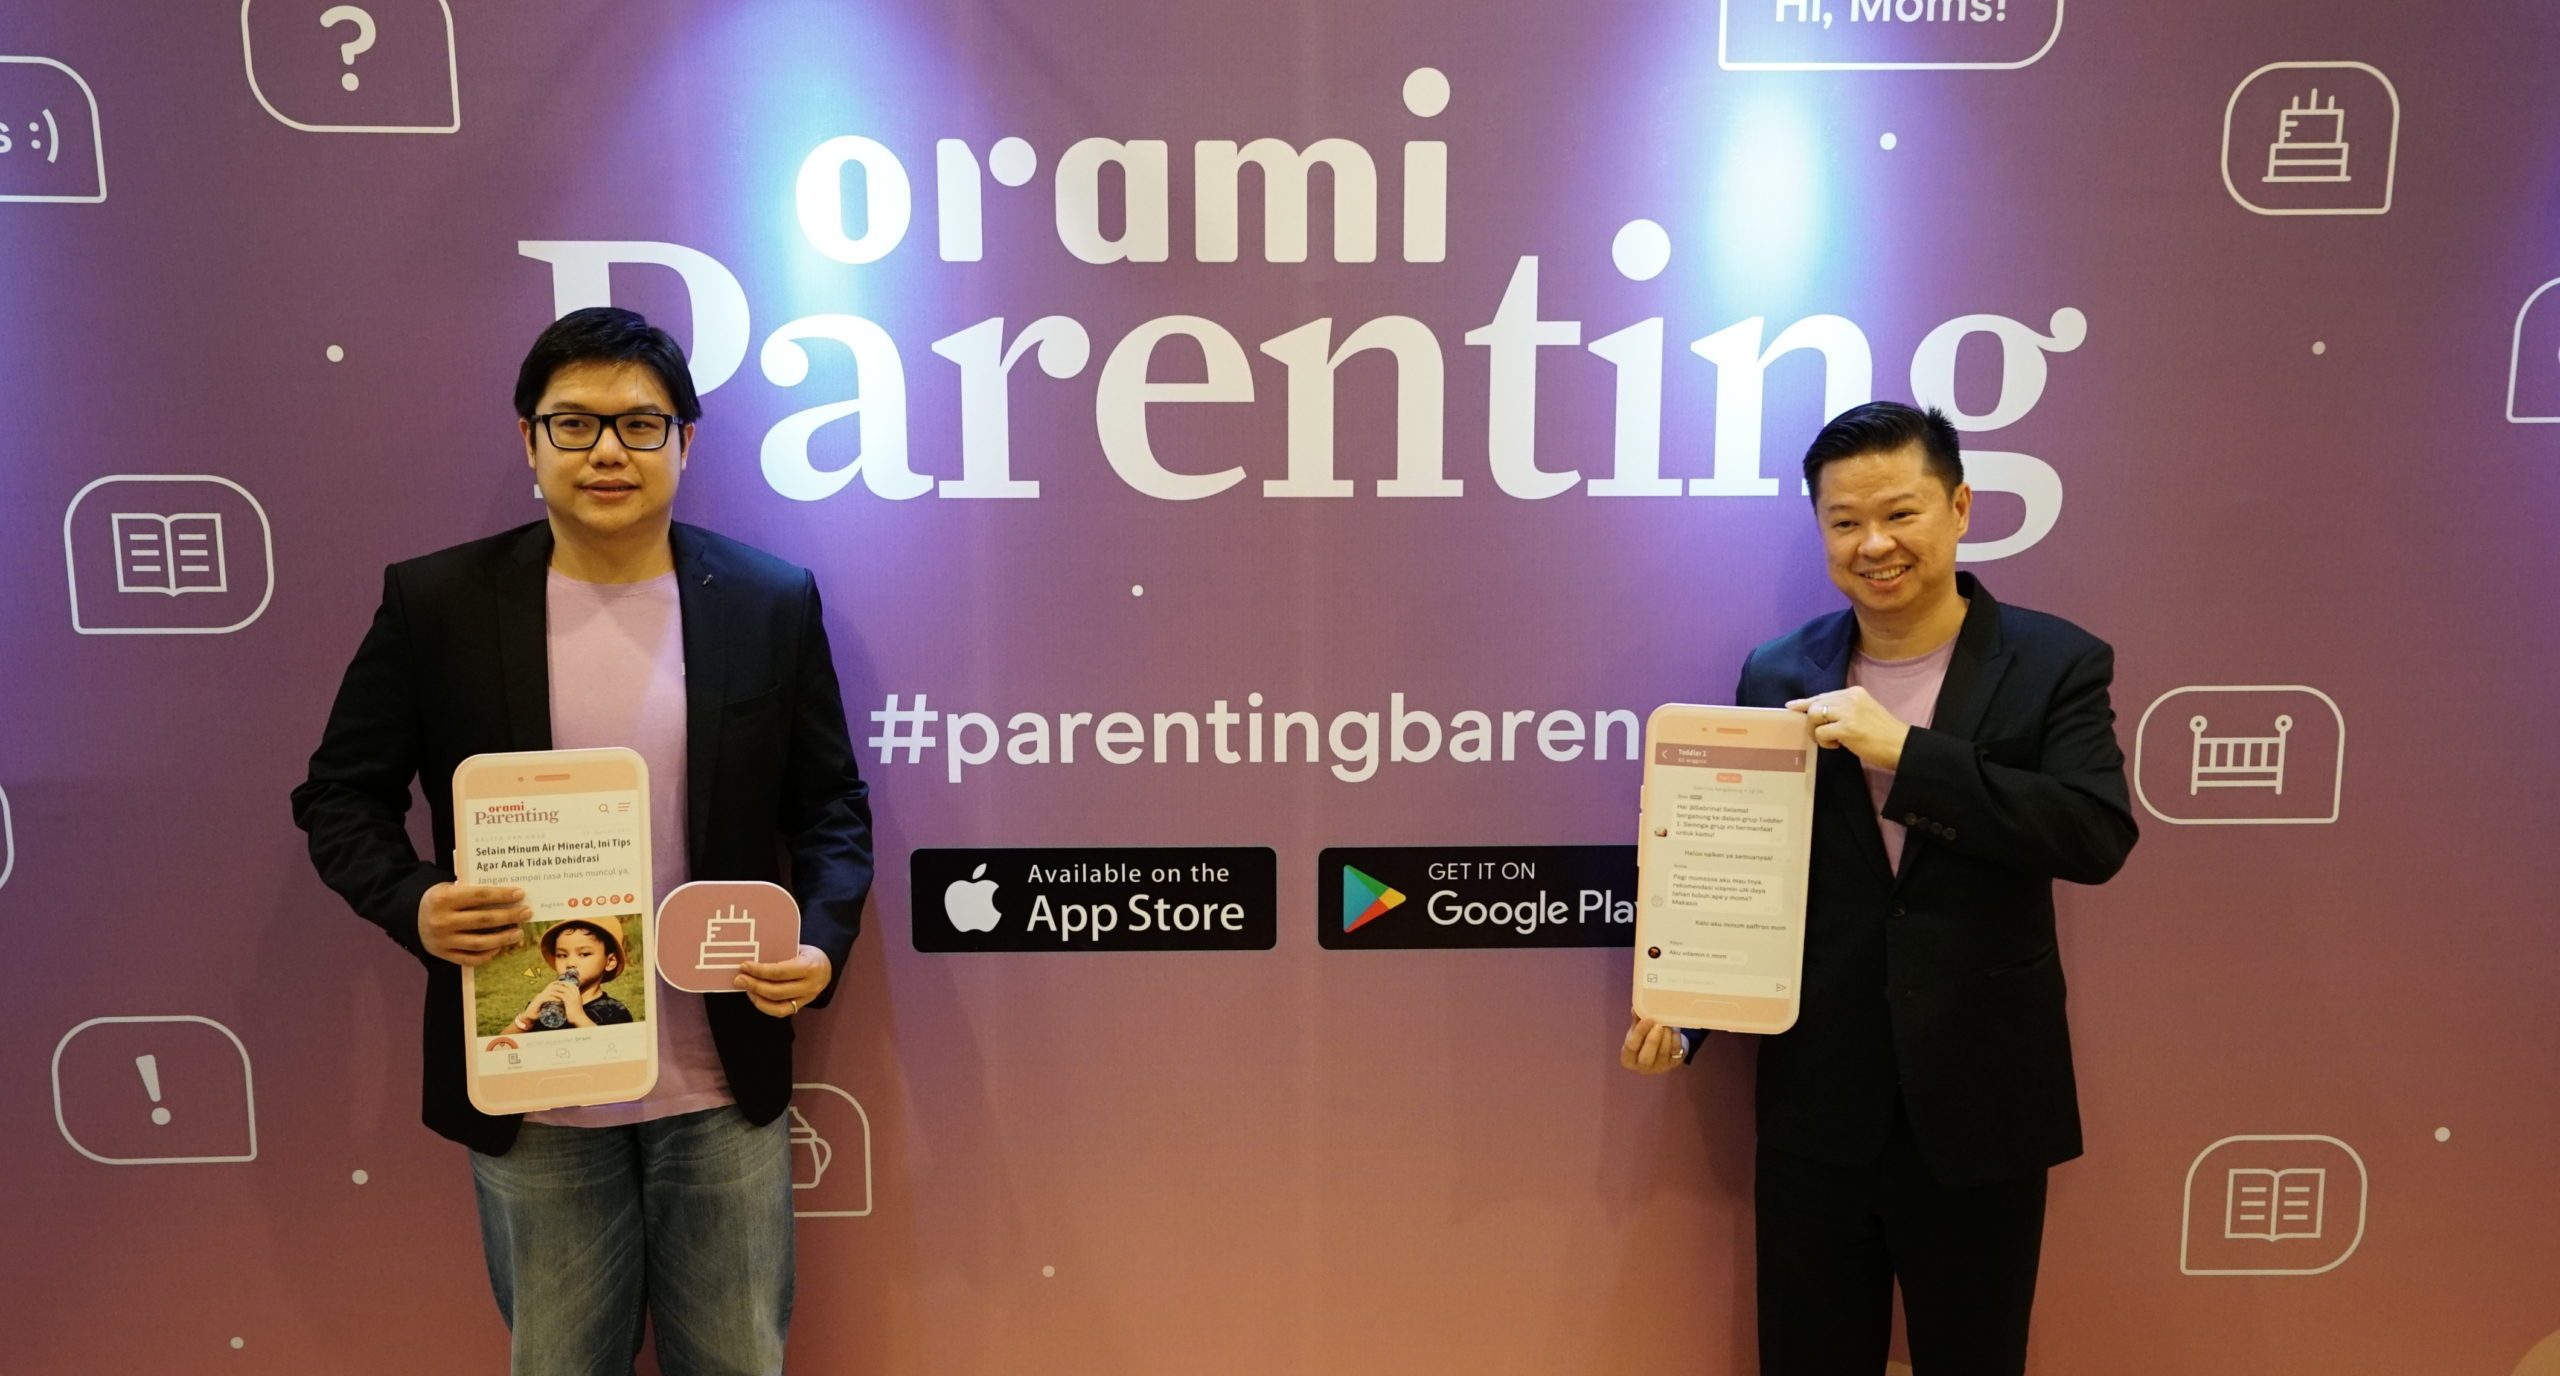 Indonesian parenting app Orami in talks with investors to raise $15m